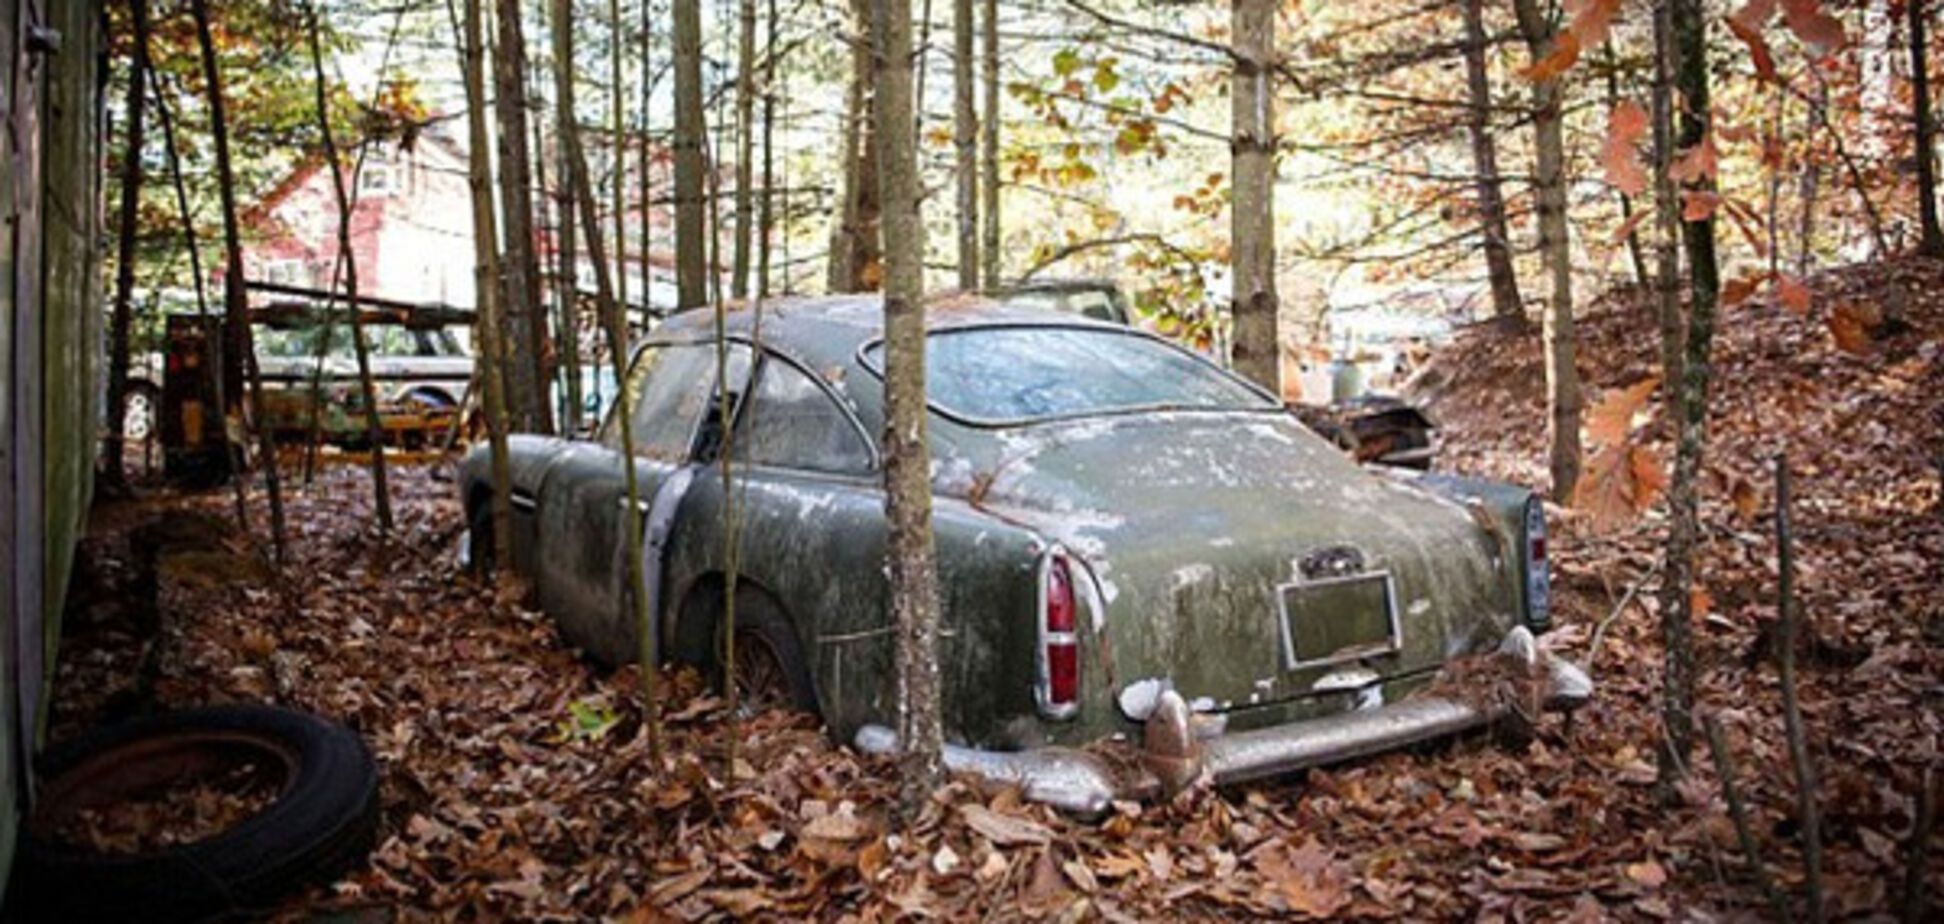 Дорогая находка: грибники обнаружили в лесу Aston Martin за $ 475 тыс.